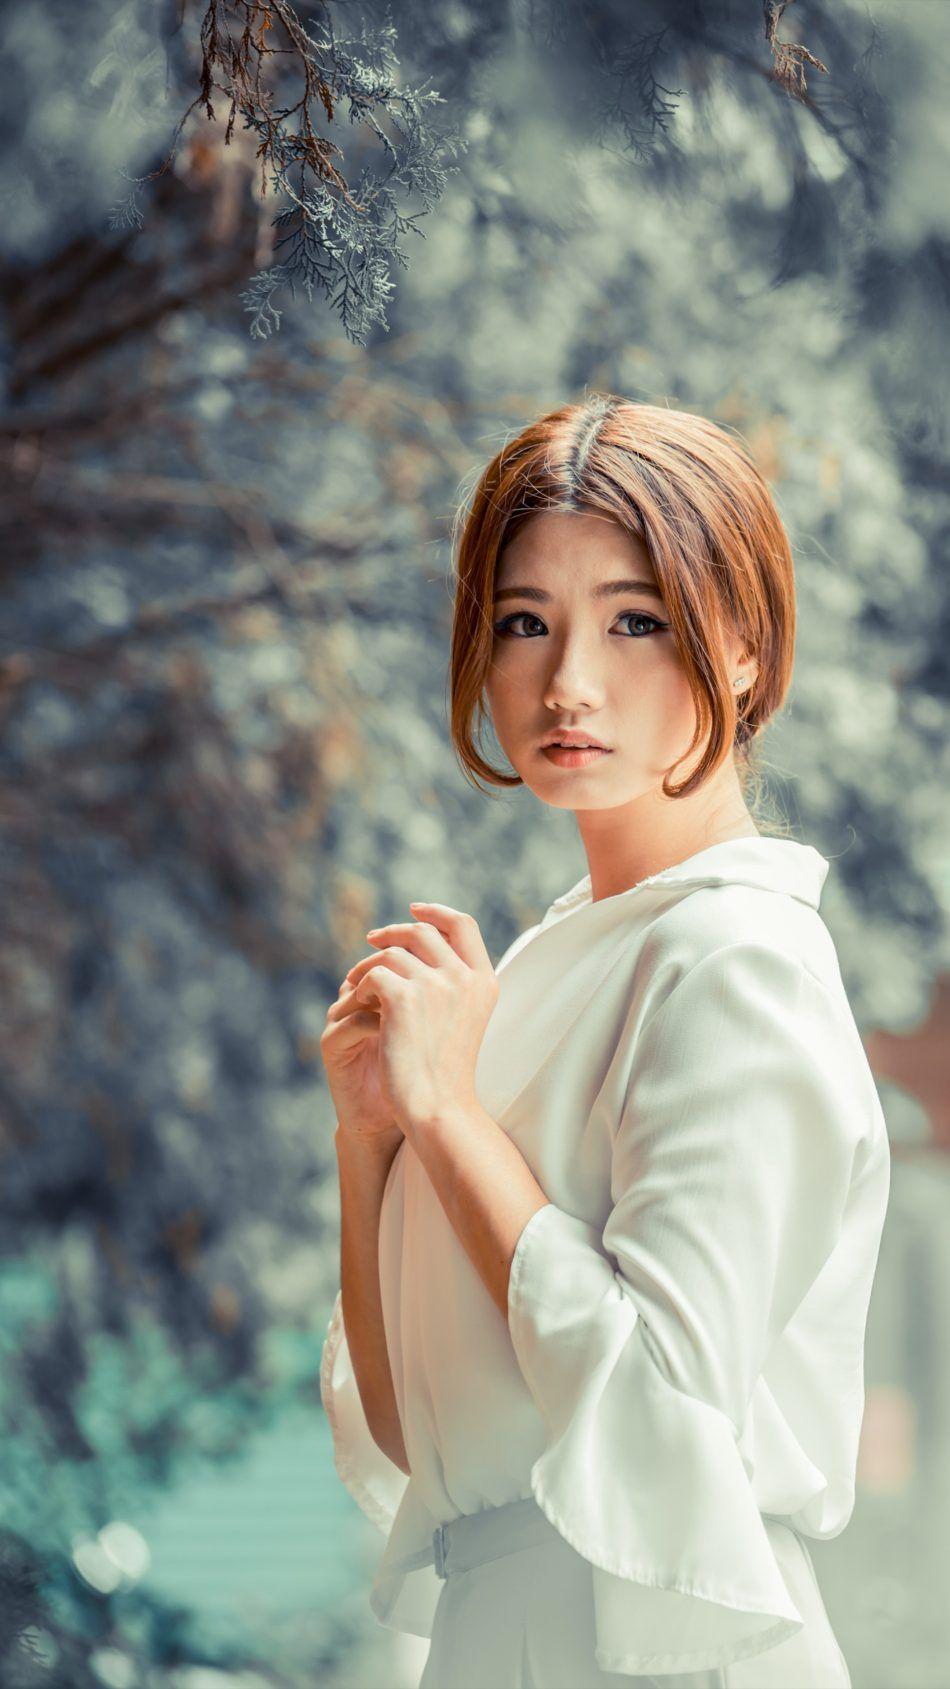 Cute Asian Girl Winter Photohoot. Asian Beauty Wallpaper. Cute